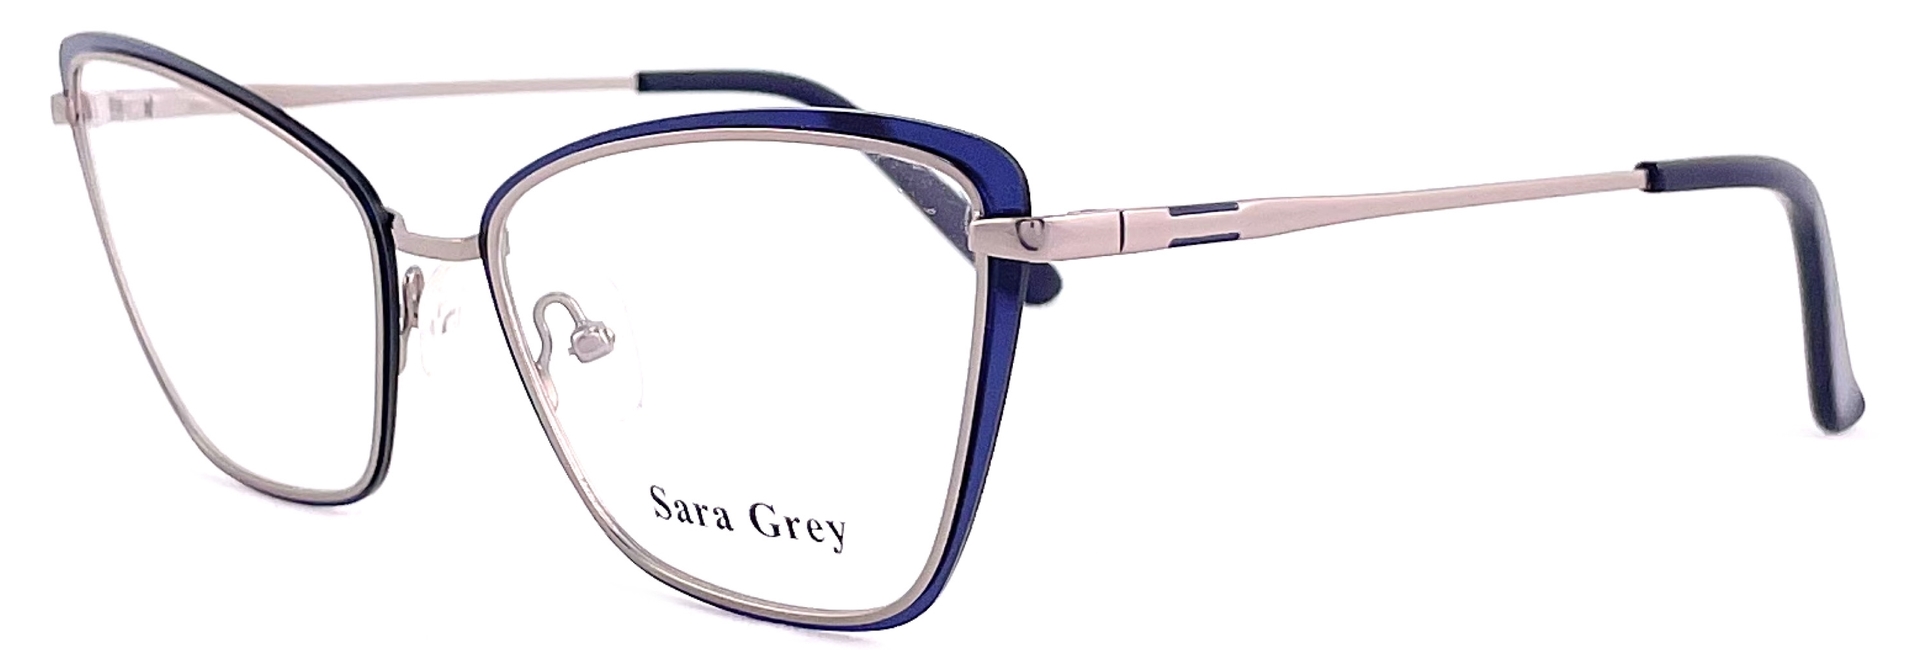 Sara Grey MG3506 2